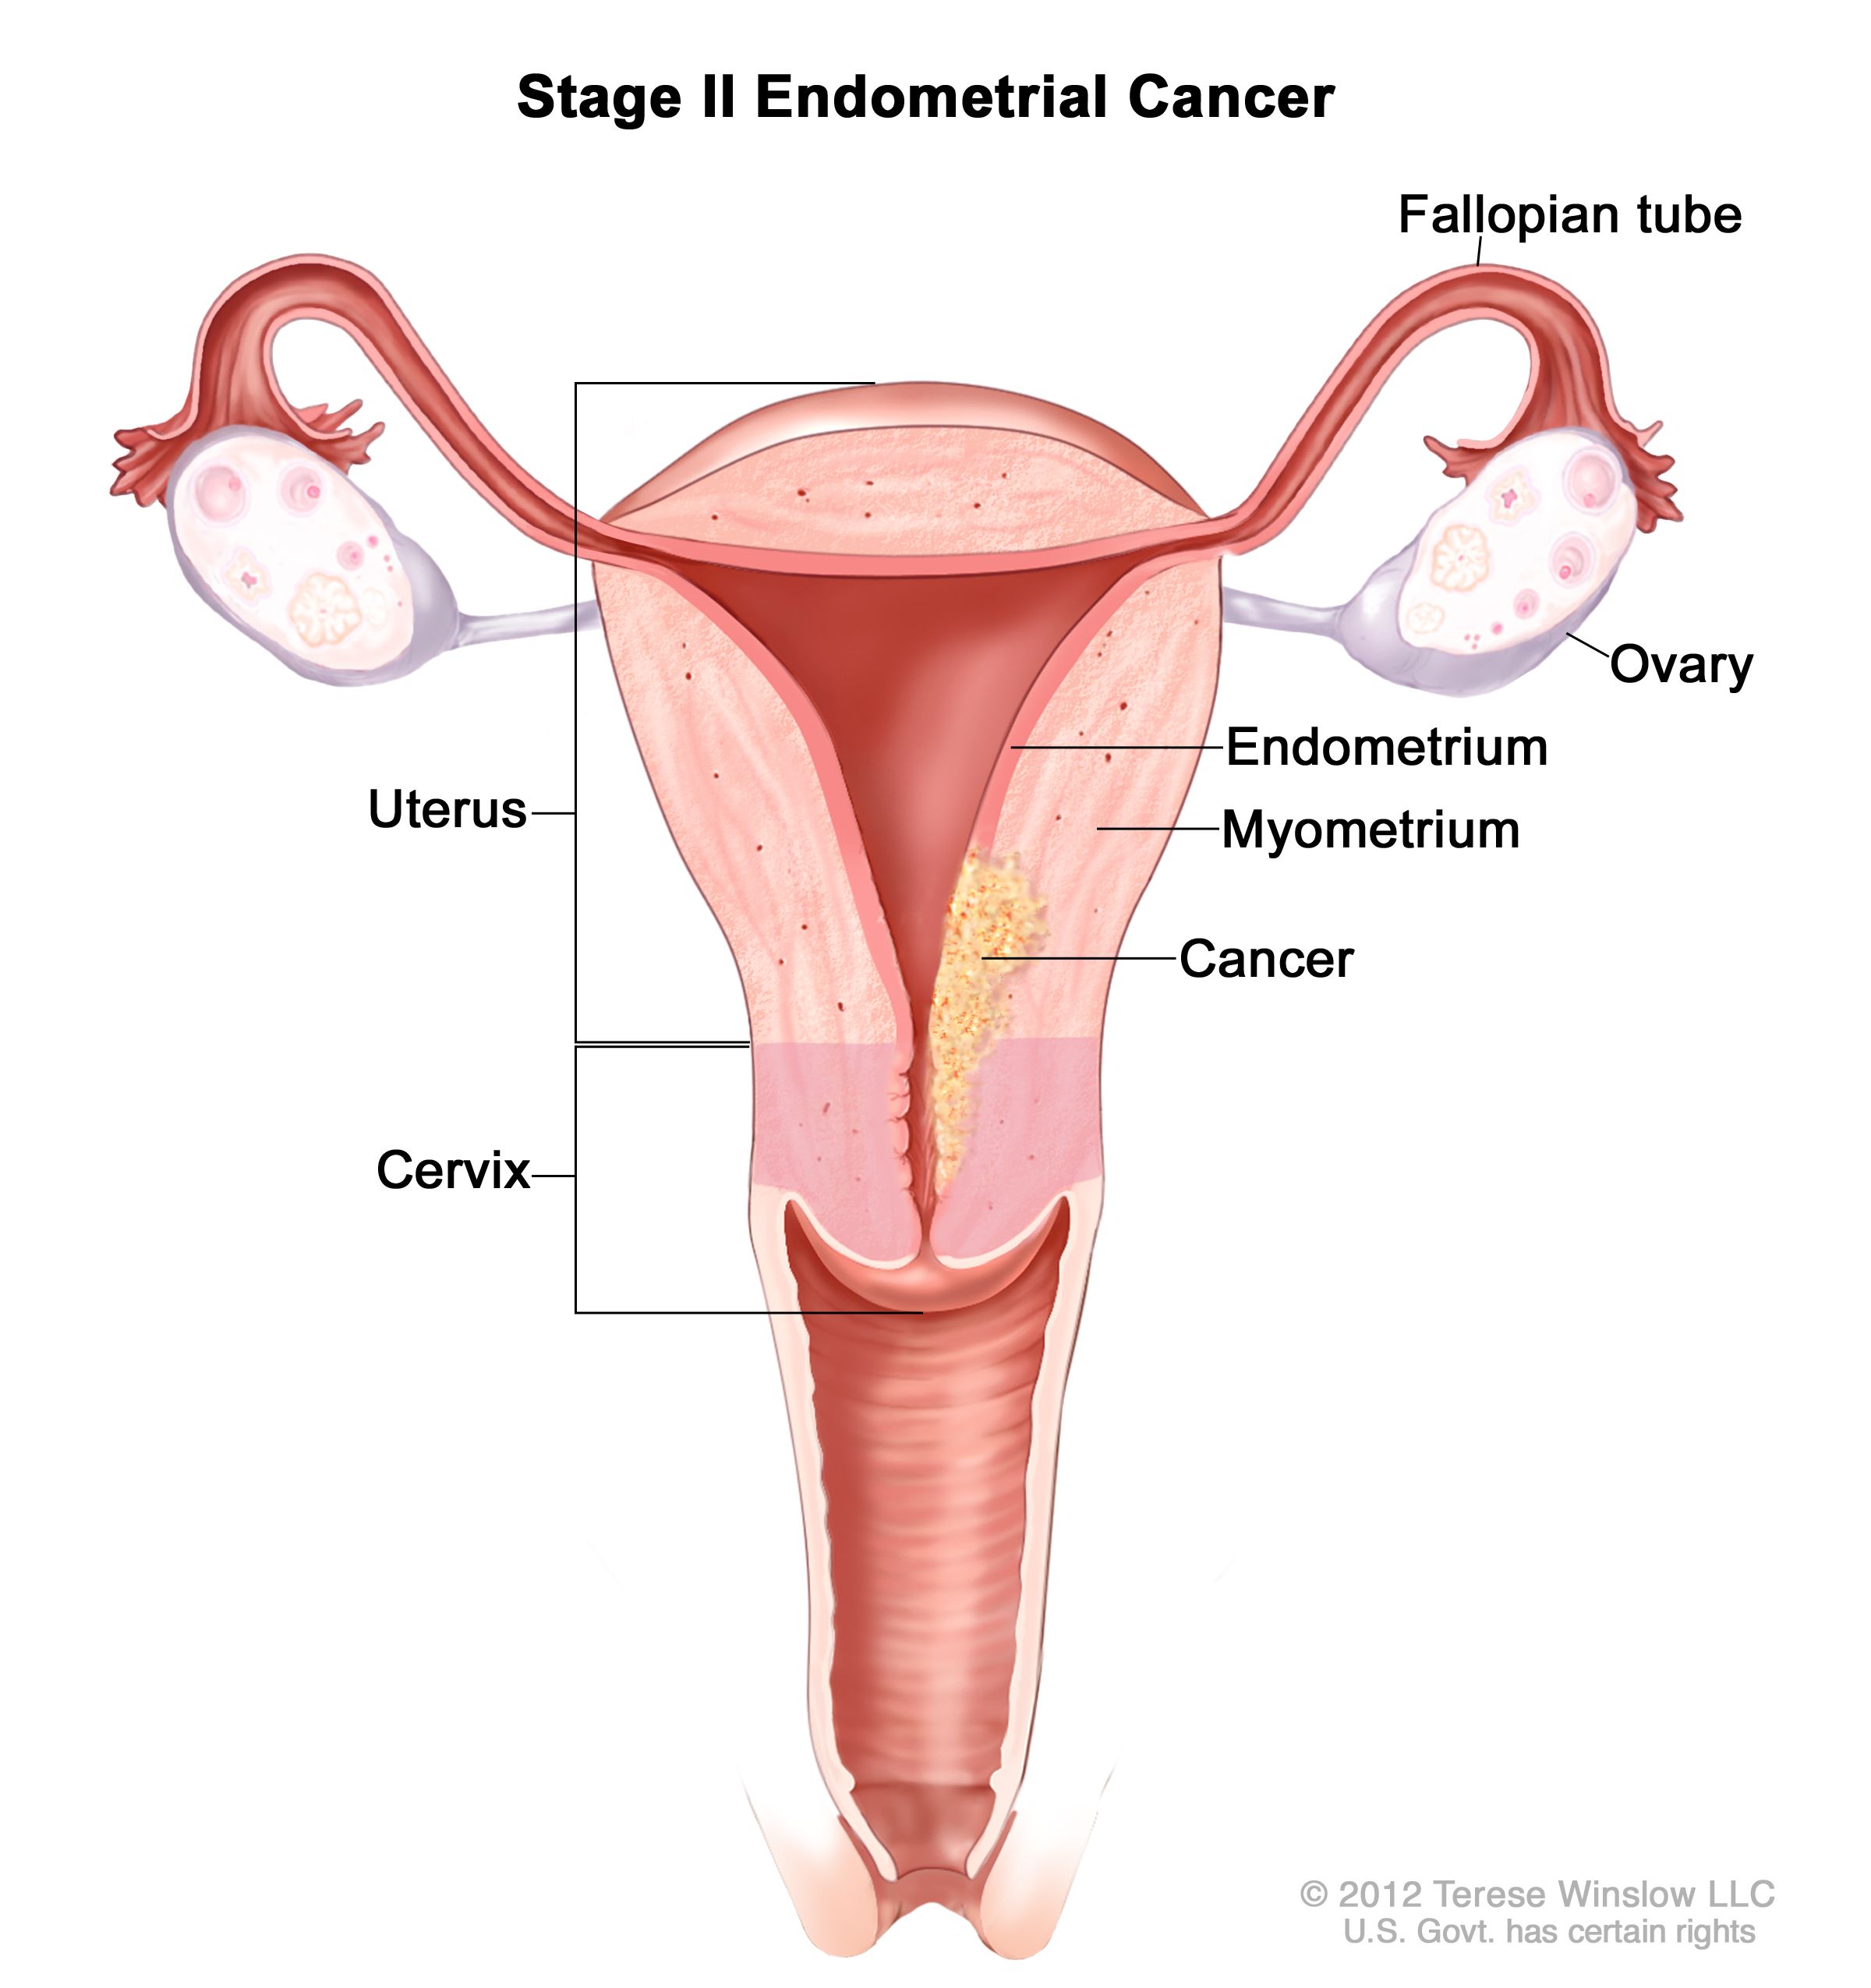 cancerul endometrial